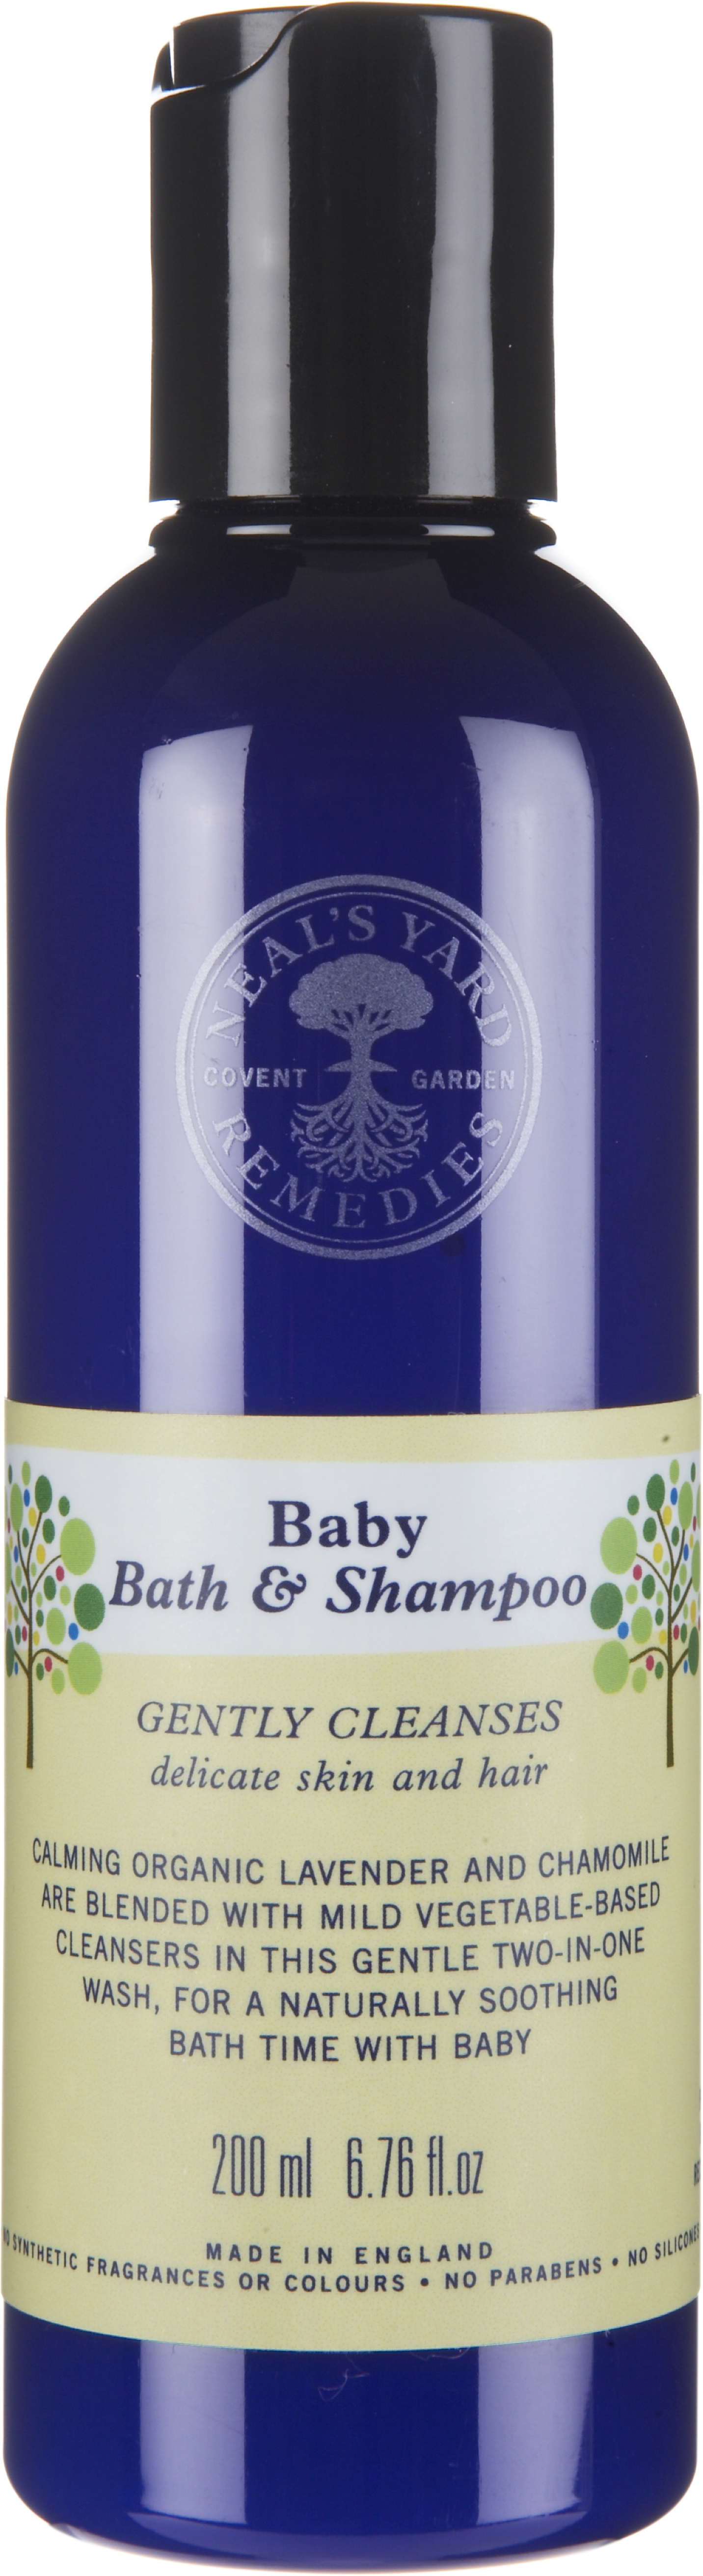 Neal’s Yard Remedies Baby Bath & Shampoo